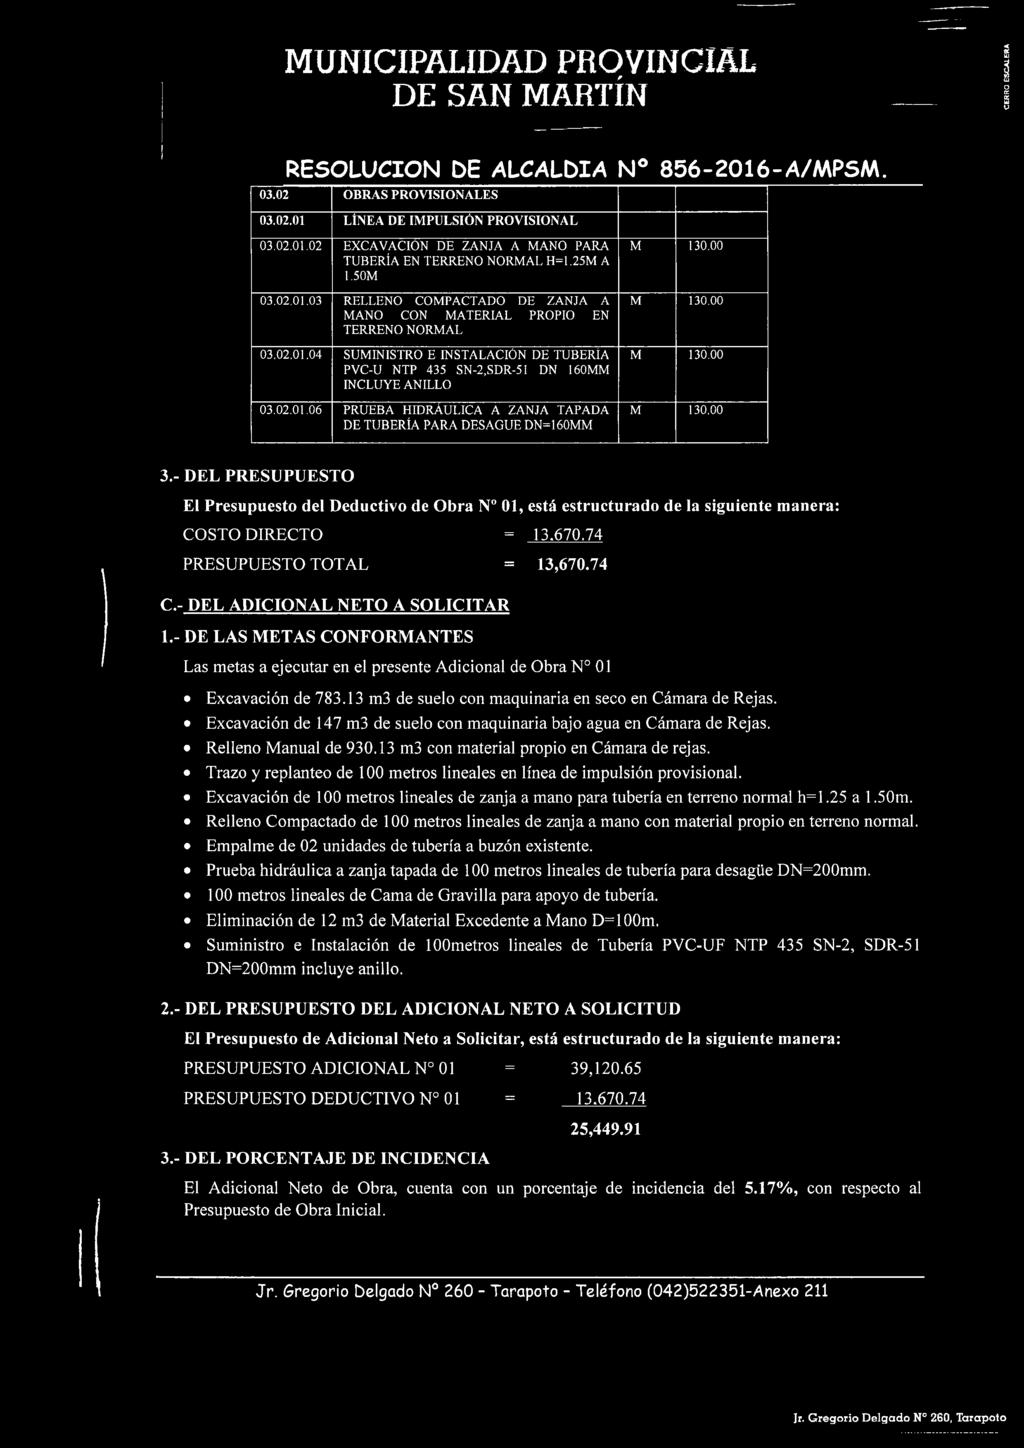 04 SUMINISTRO E INSTALACIÓN DE TUBERIA PVC-U NTP 435 SN-2,SDR-51 DN 160MM INCLUYE ANILLO 03.02.01.